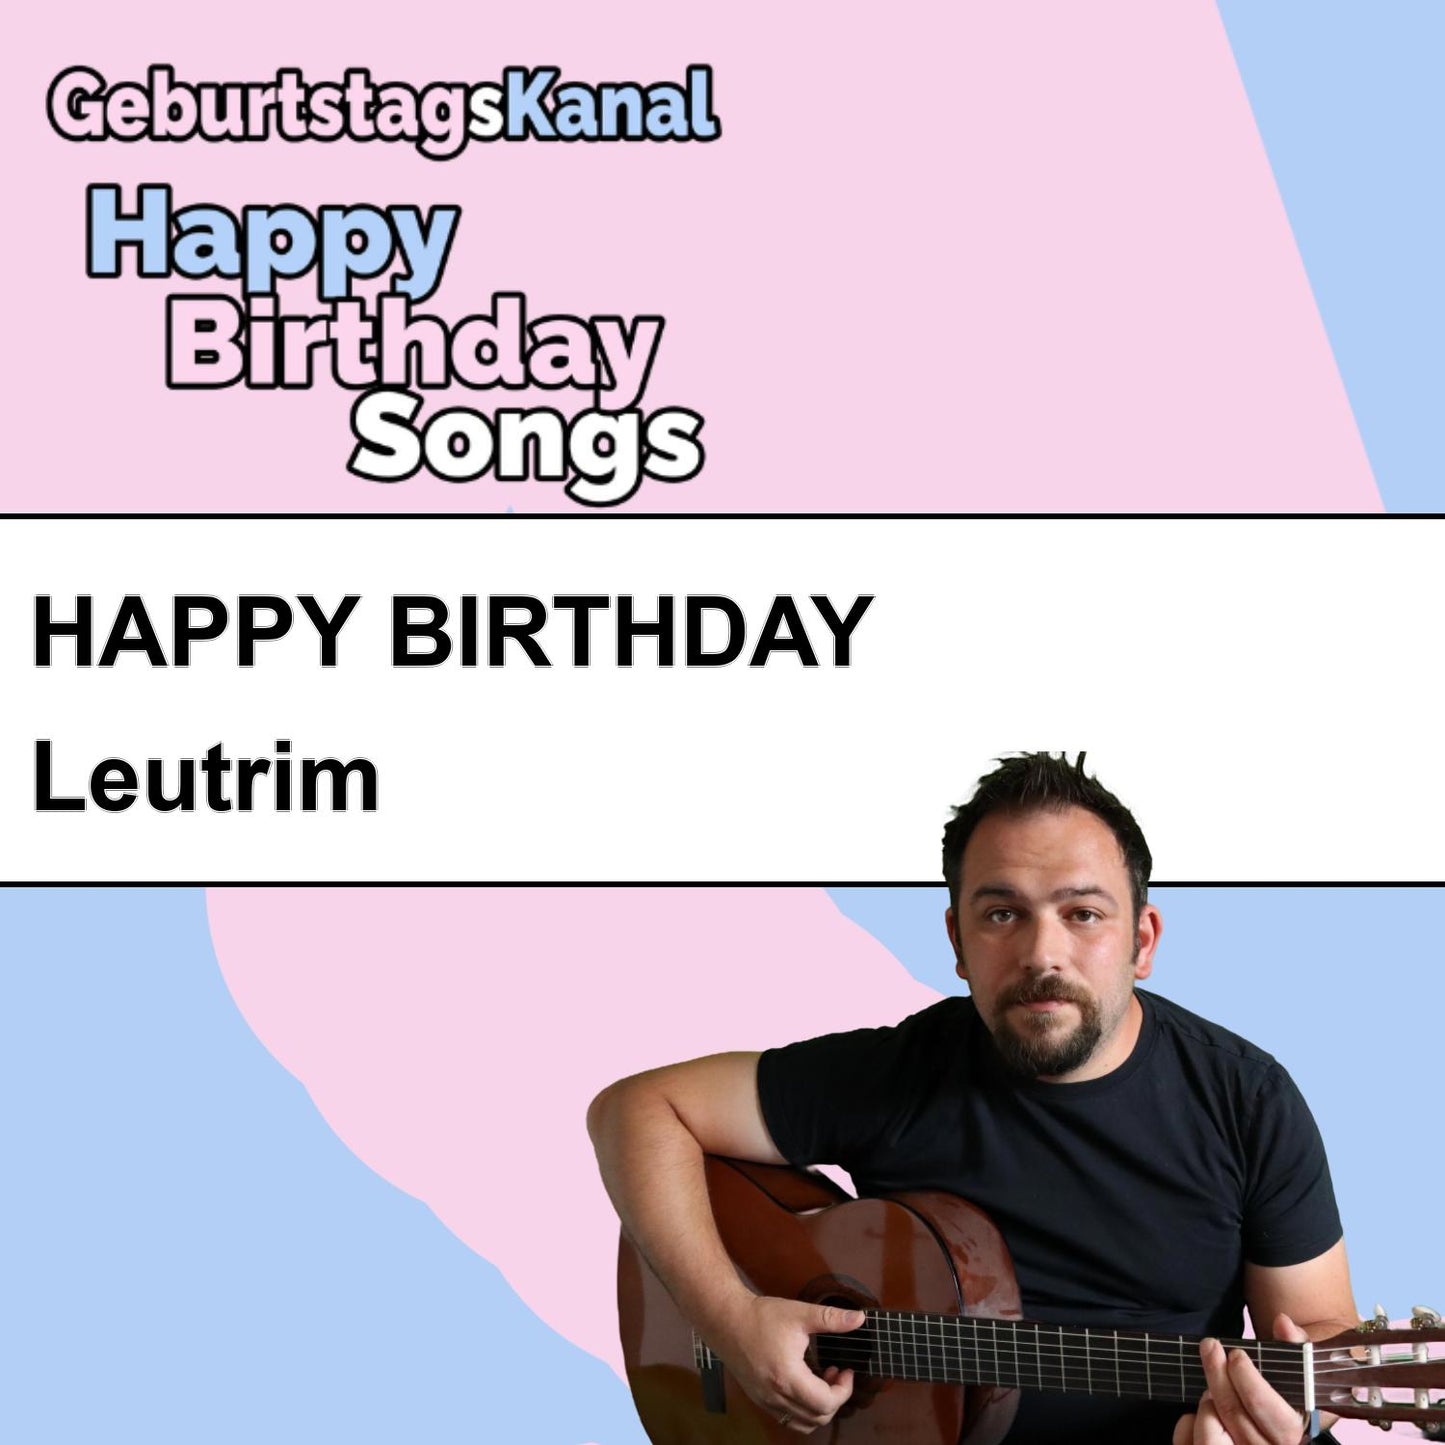 Produktbild Happy Birthday to you Leutrim mit Wunschgrußbotschaft